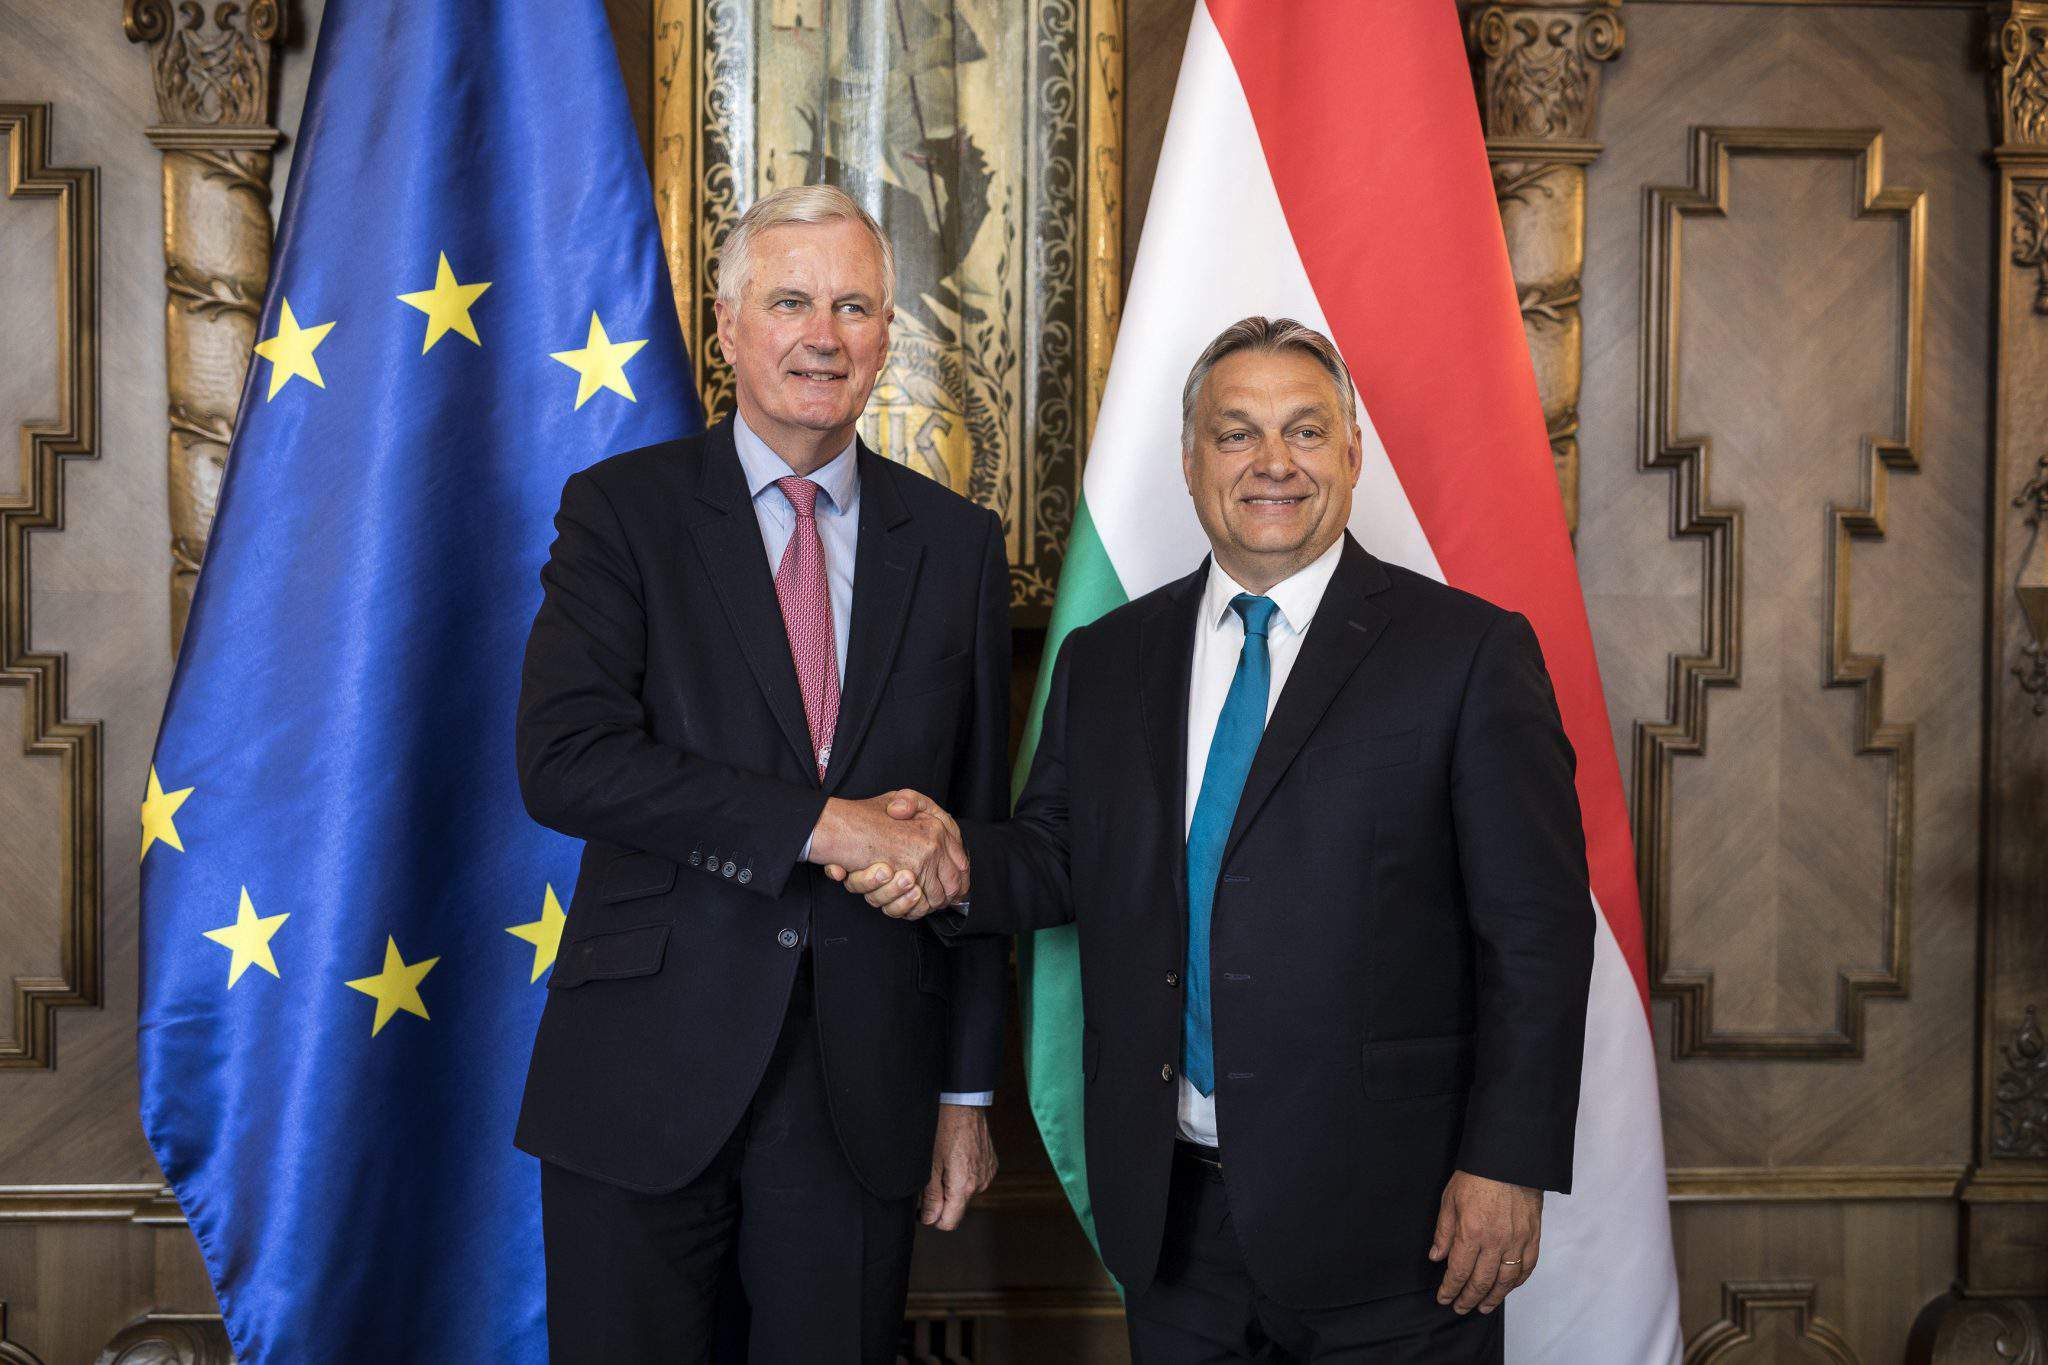 Viktor Orbán European Union